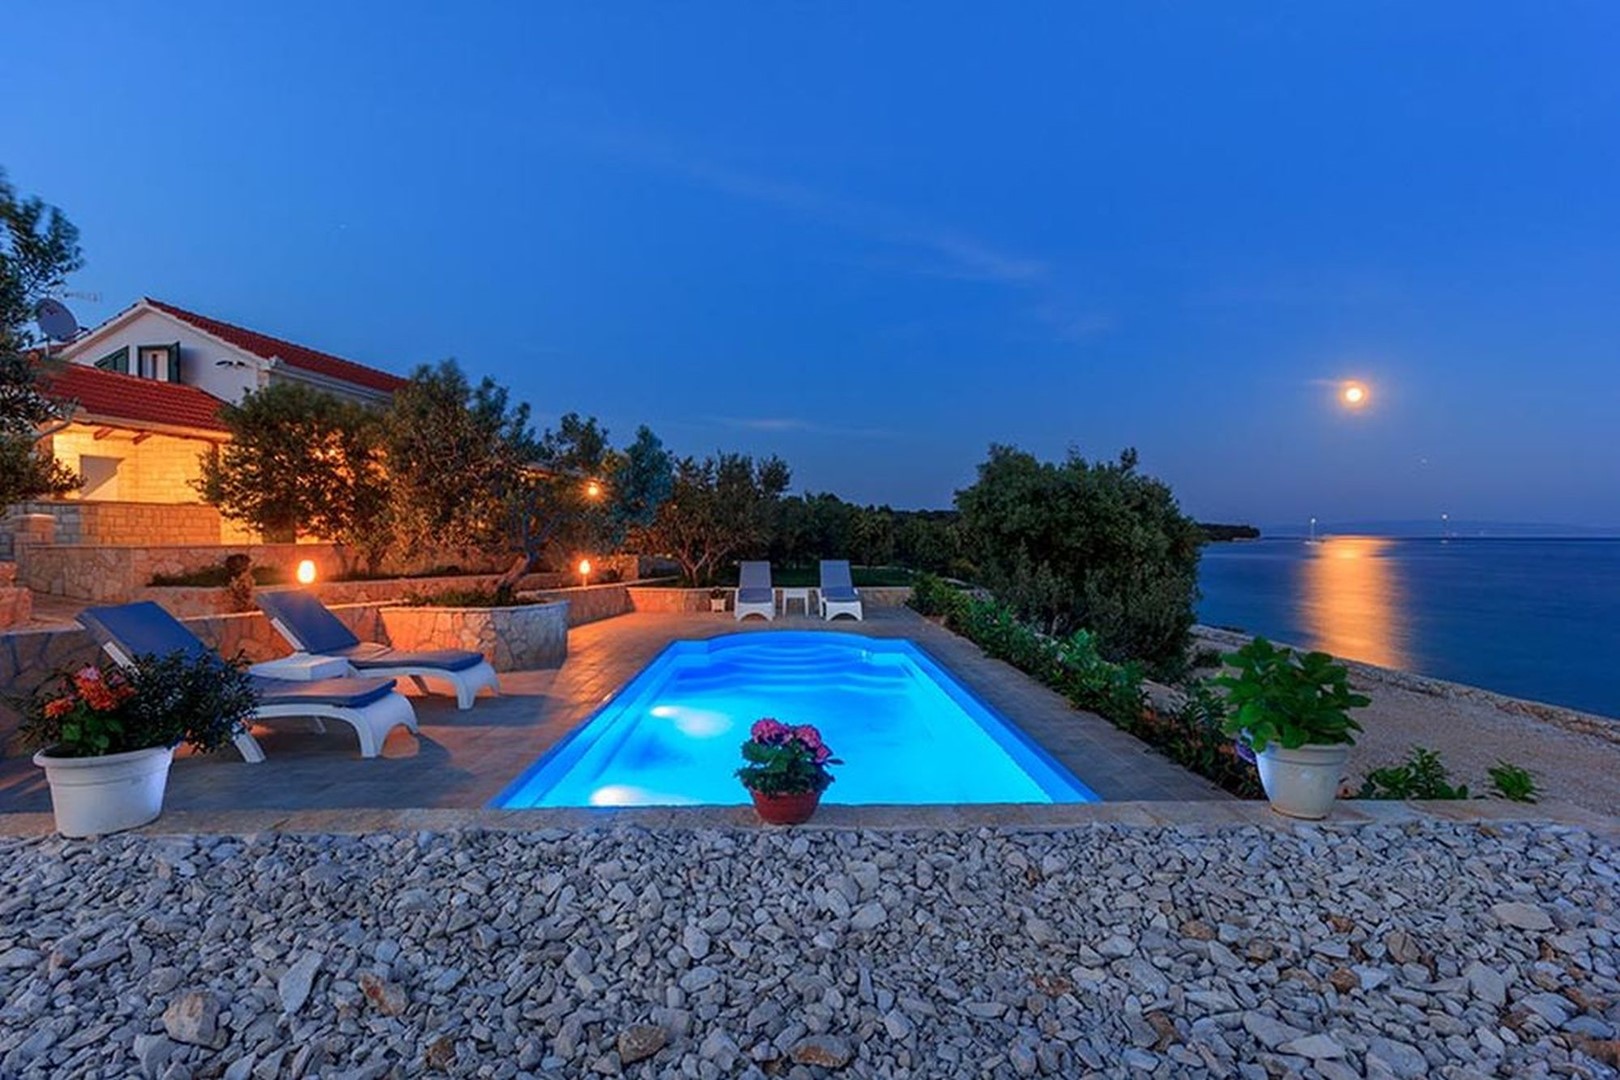 TROGIR PОСКОШНЫЕ ВИЛЛЫ - Роскошная Вилла Dalmatino Trogir с бассейном на пляже 